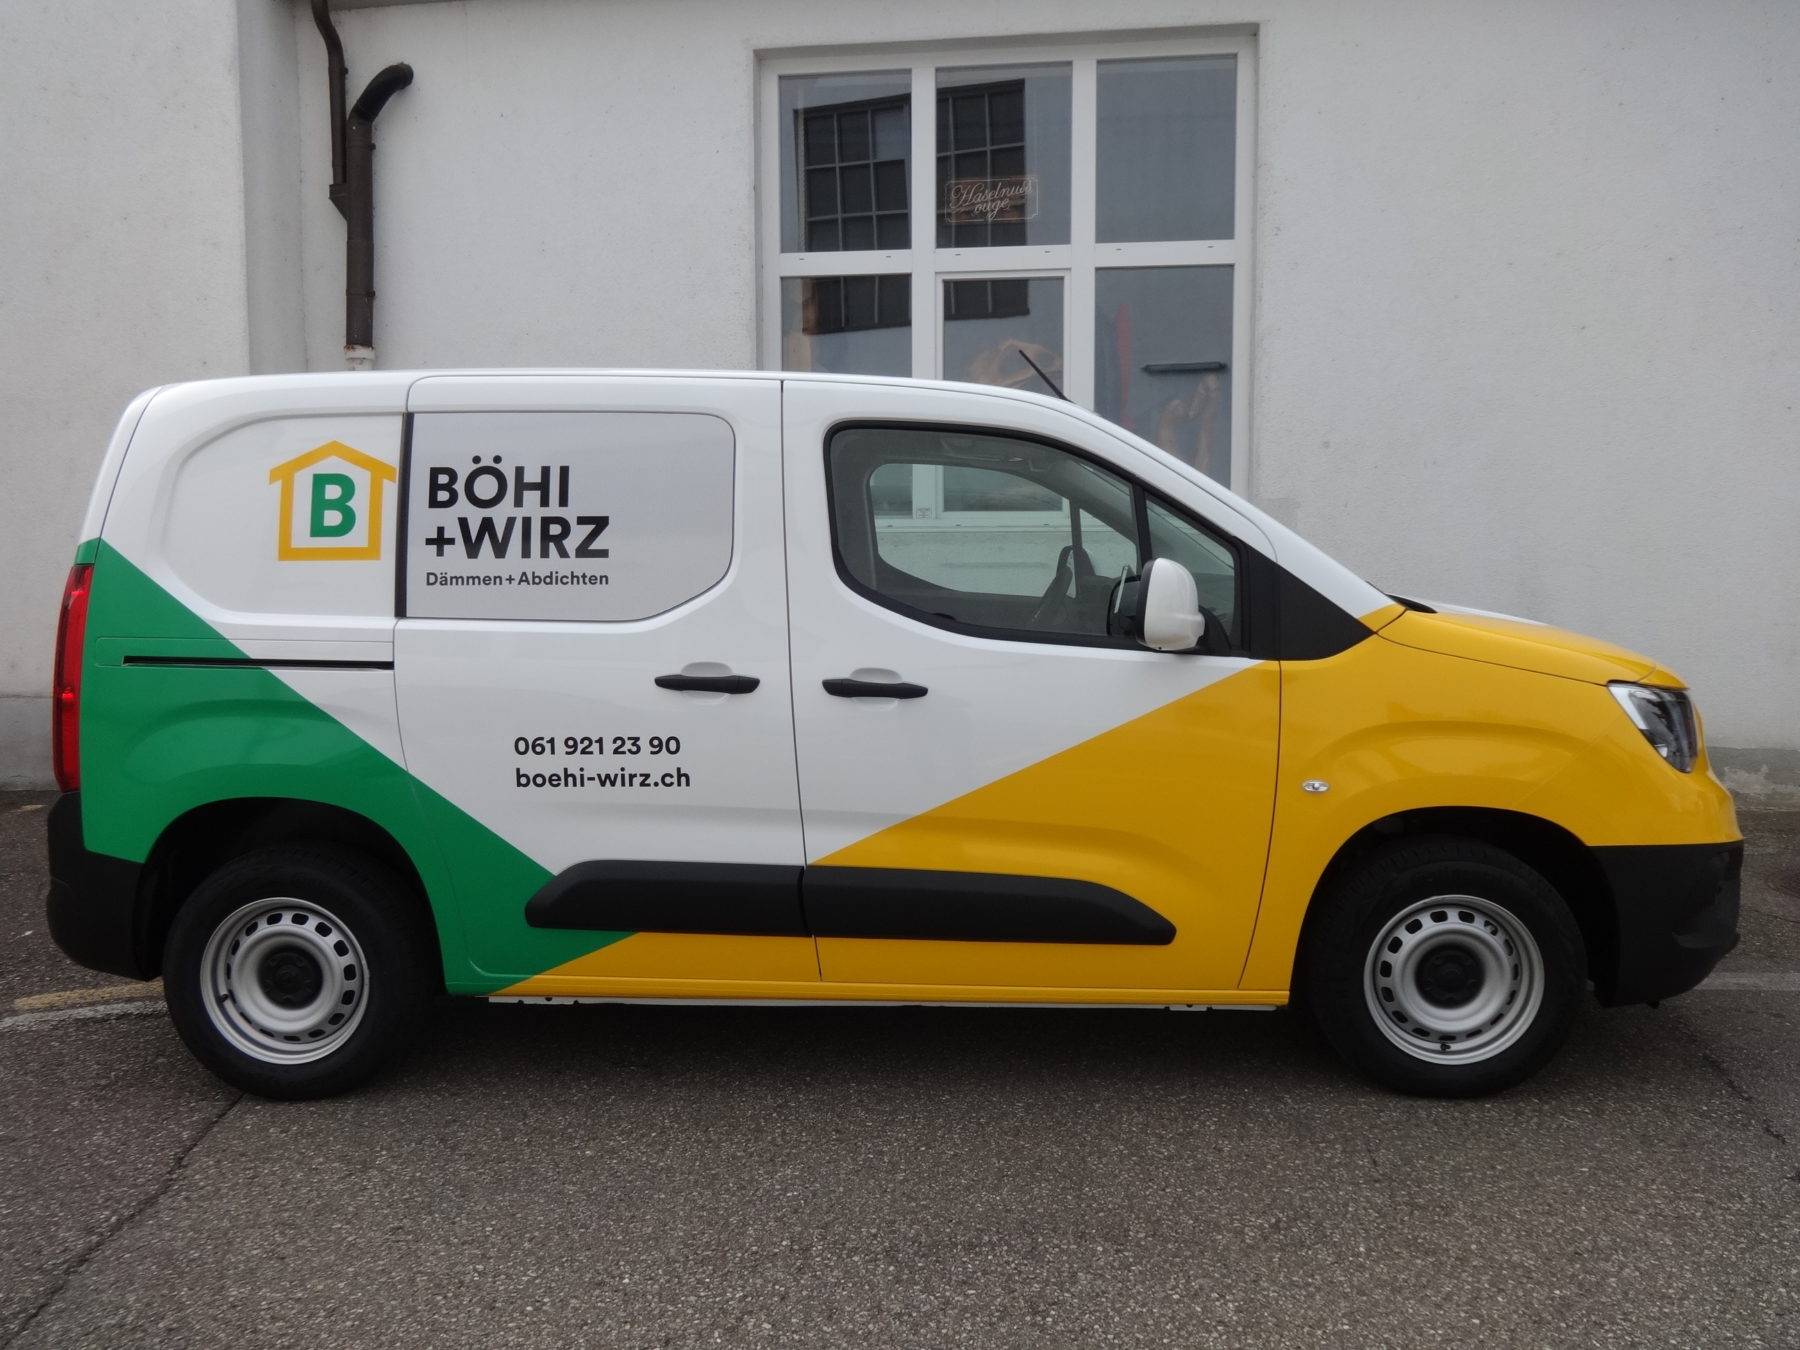 Böhi + Wirz AG mit neuem Design | JOST Beschriftungen Liestal